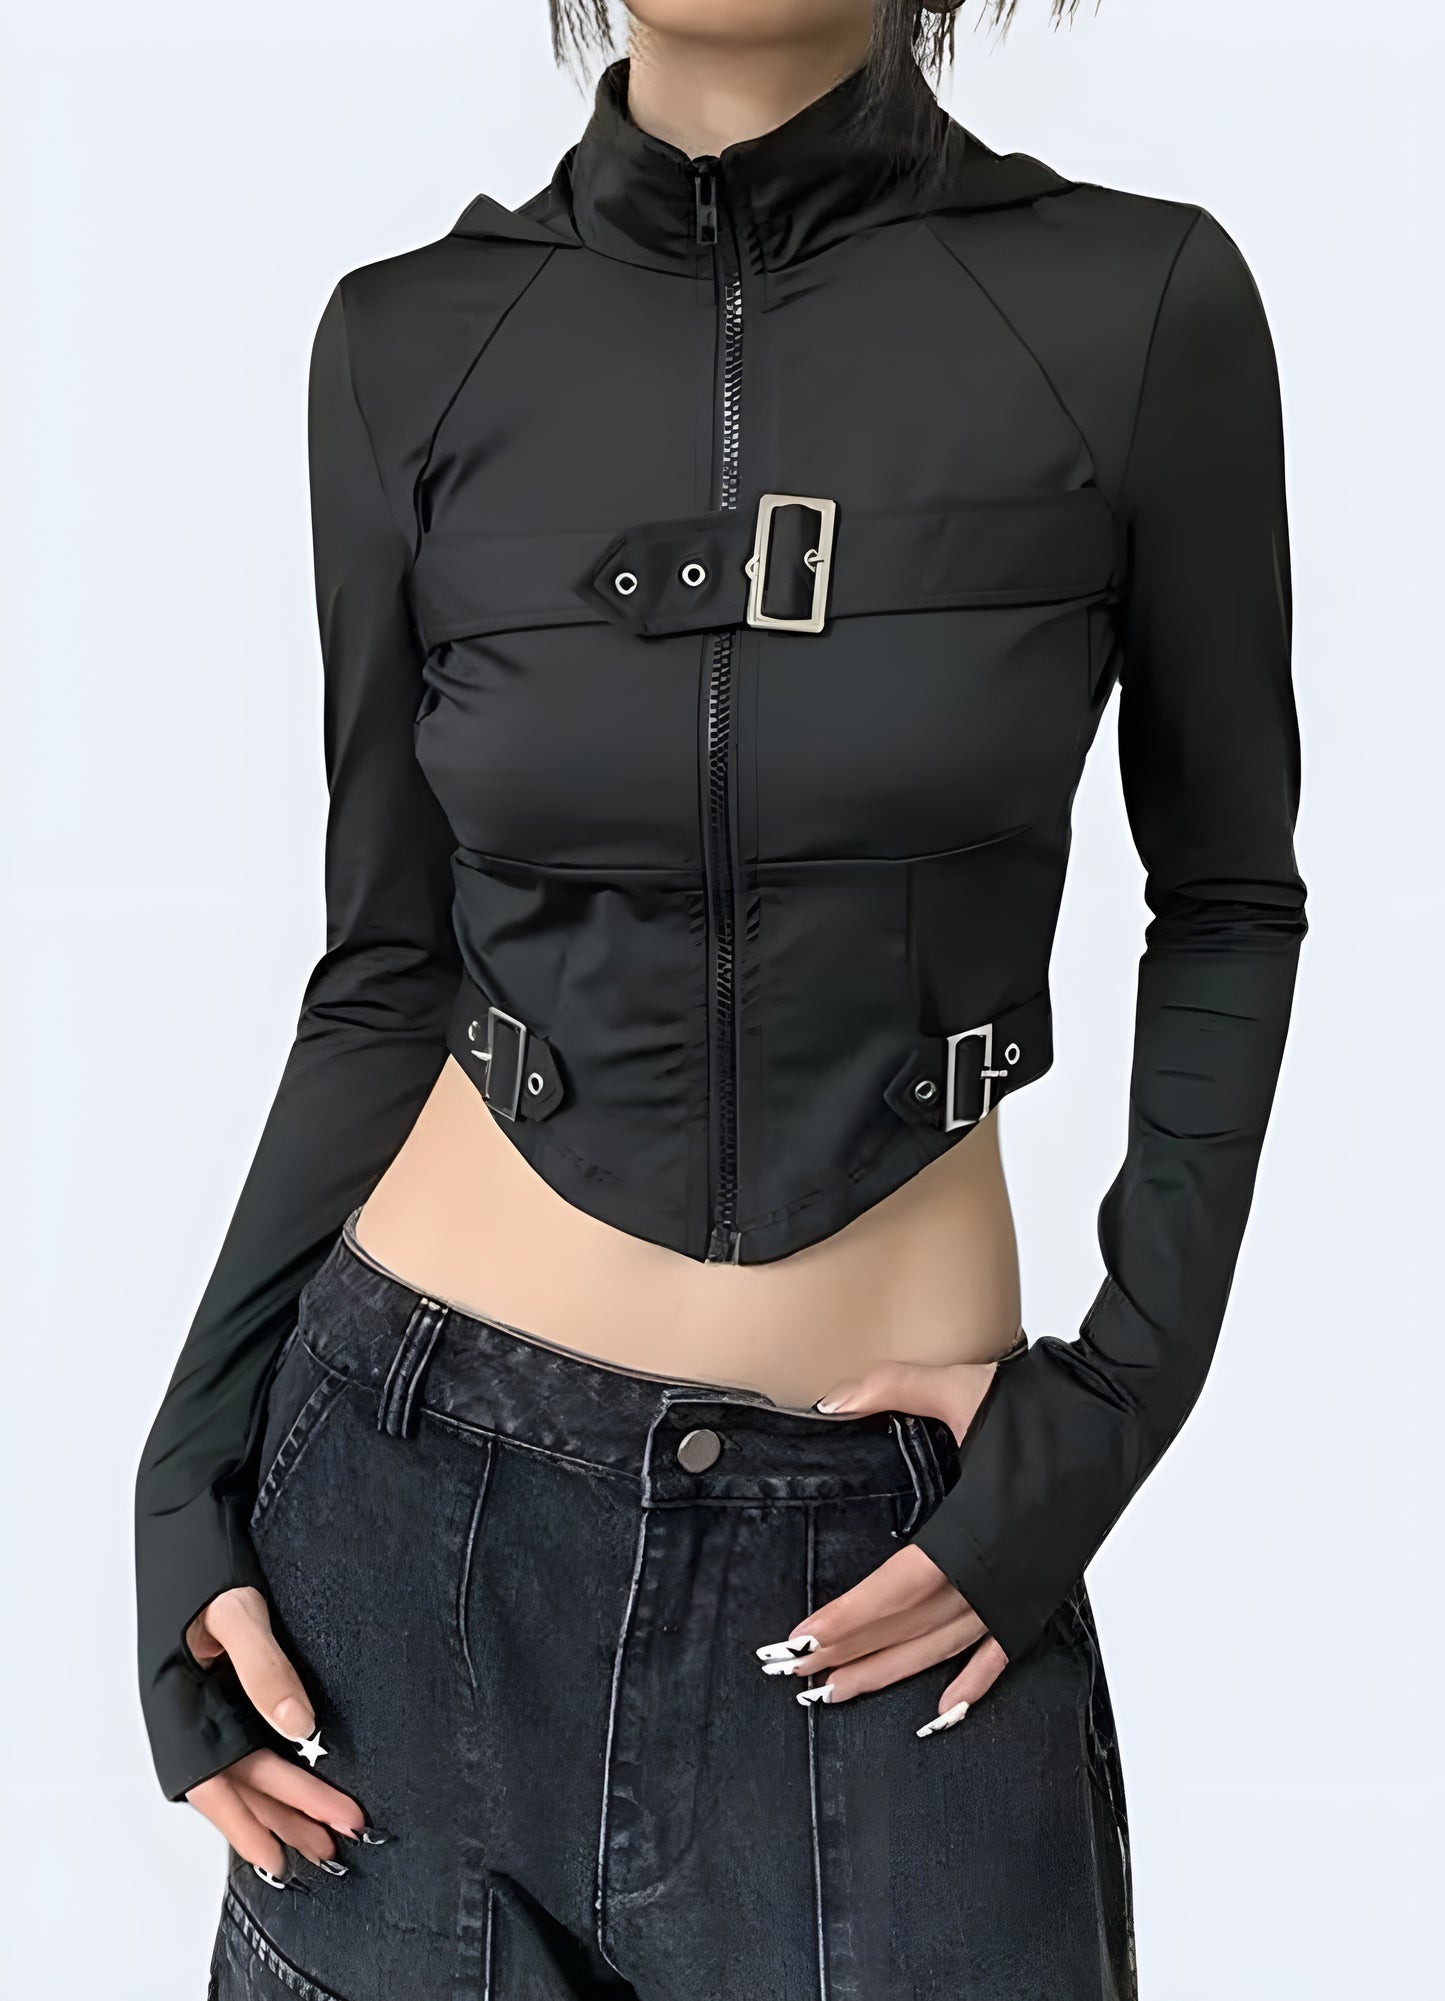 The streetwear crop top shines in its sleek black.